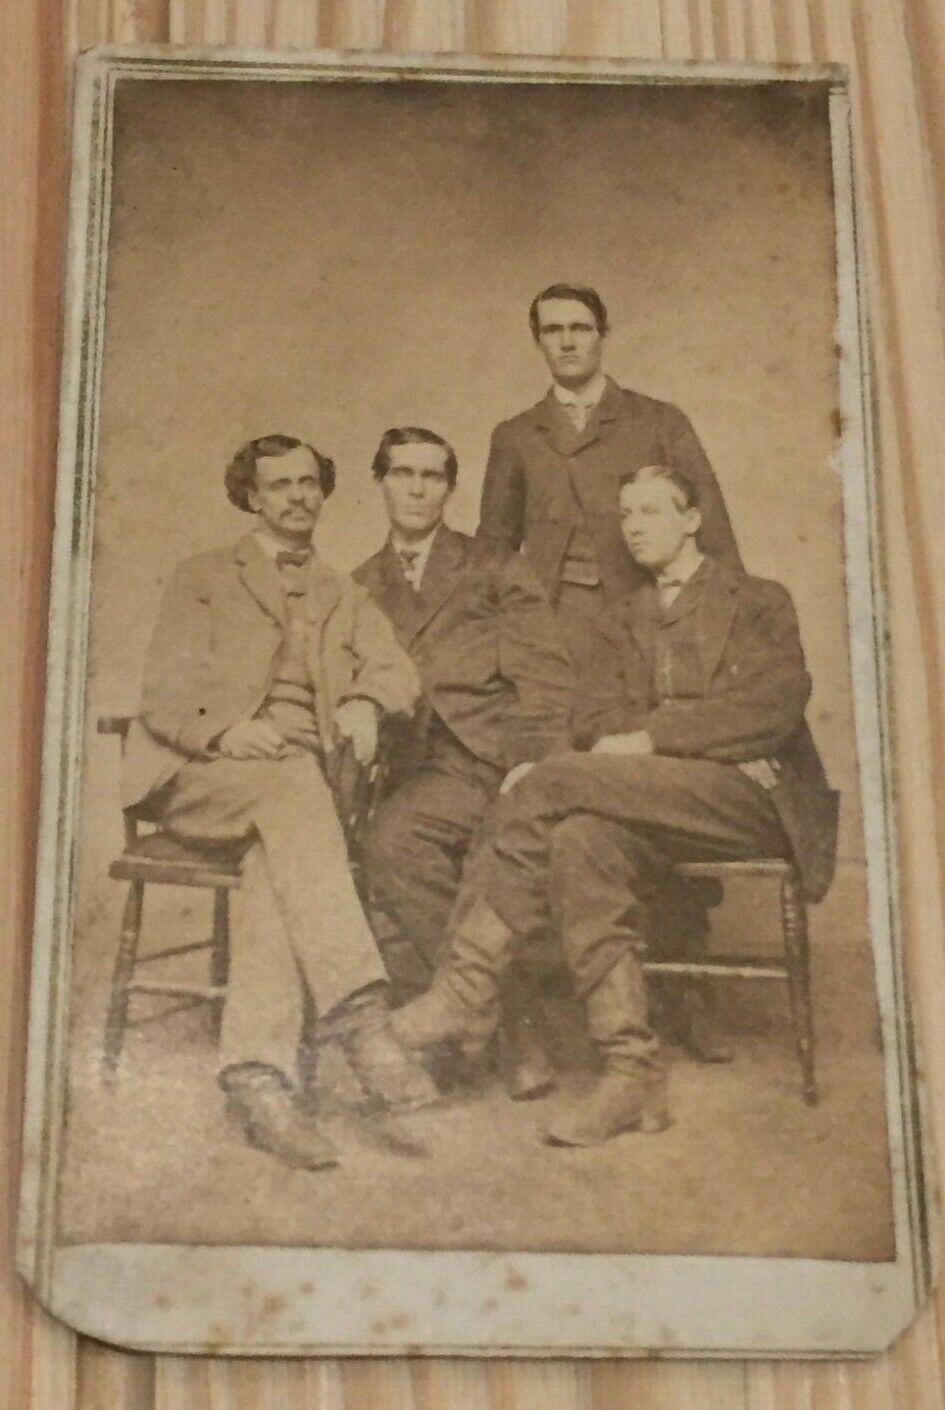 c1865 - 1870 CDV Photo of 4 Tall Men, All Identified, Comfort Peck, Frank Knapp